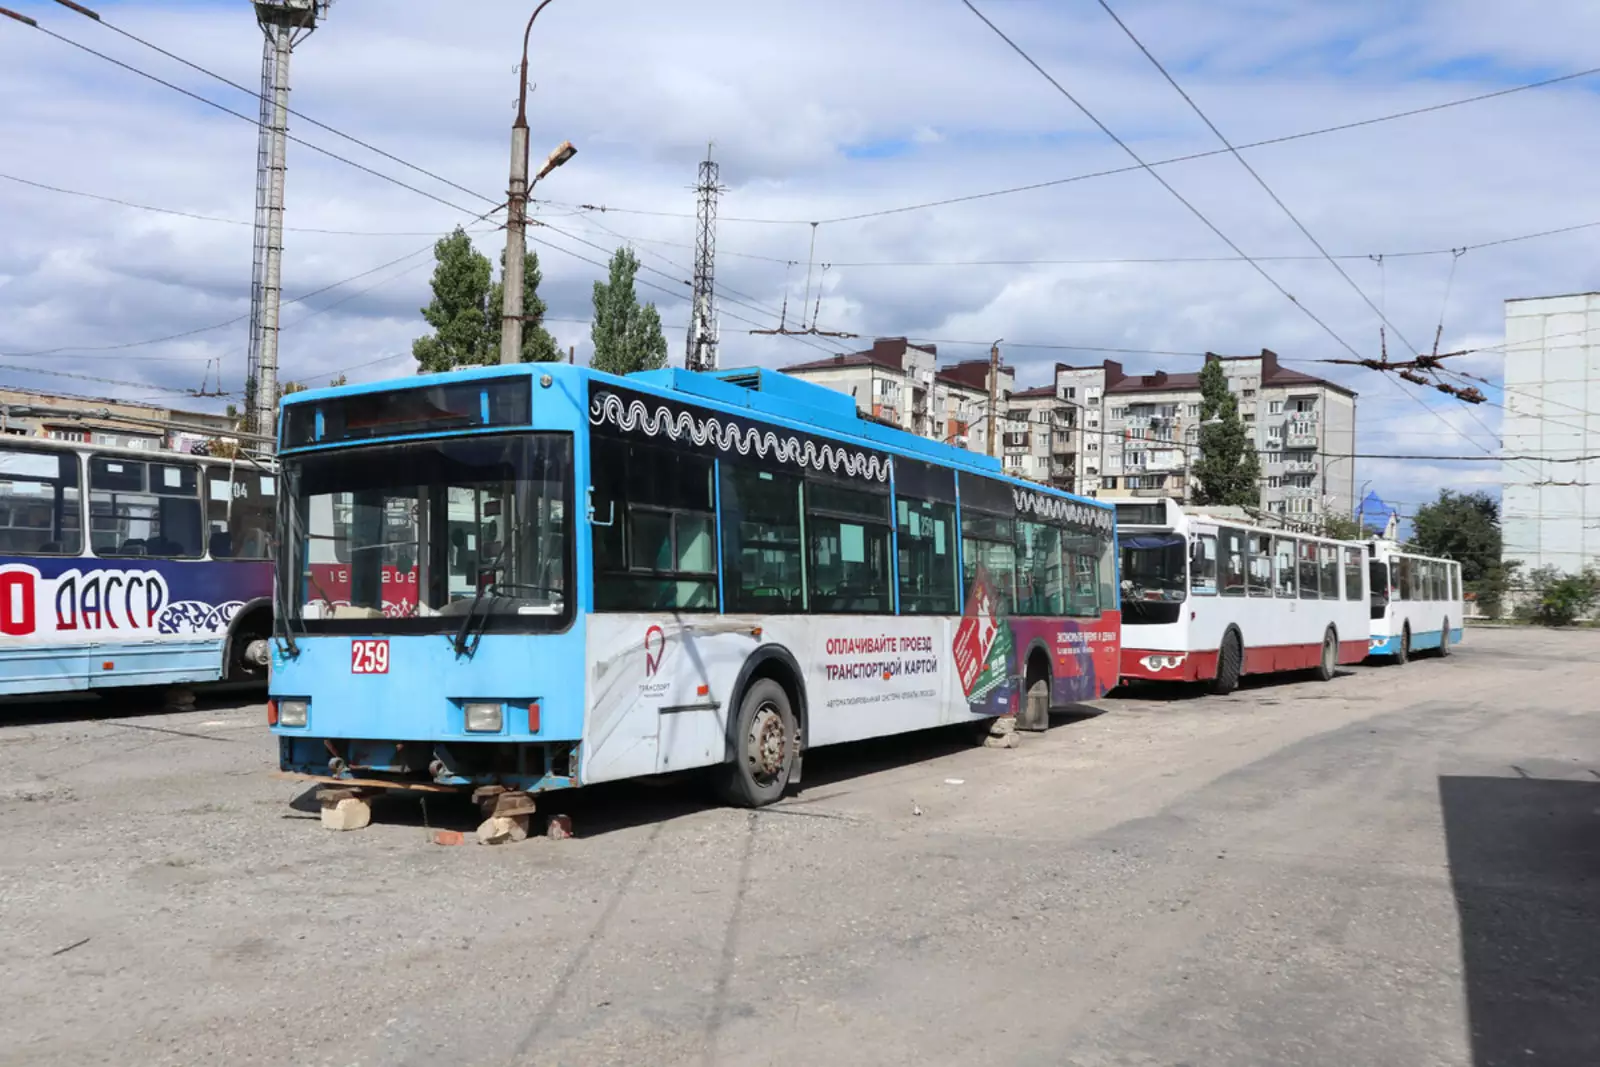 Троллейбусные системы России, находящиеся под угрозой закрытия